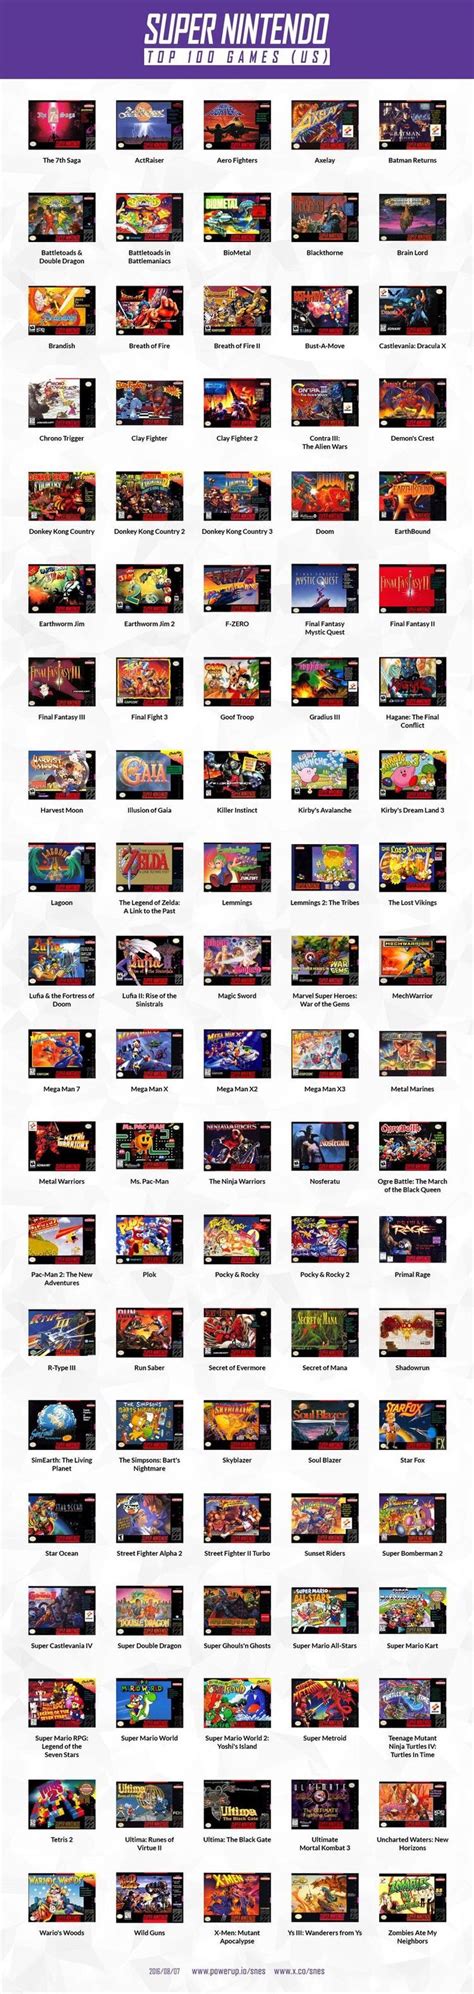 Top 100 Snes Super Nintendo Games Jogos Super Nintendo Consoles De